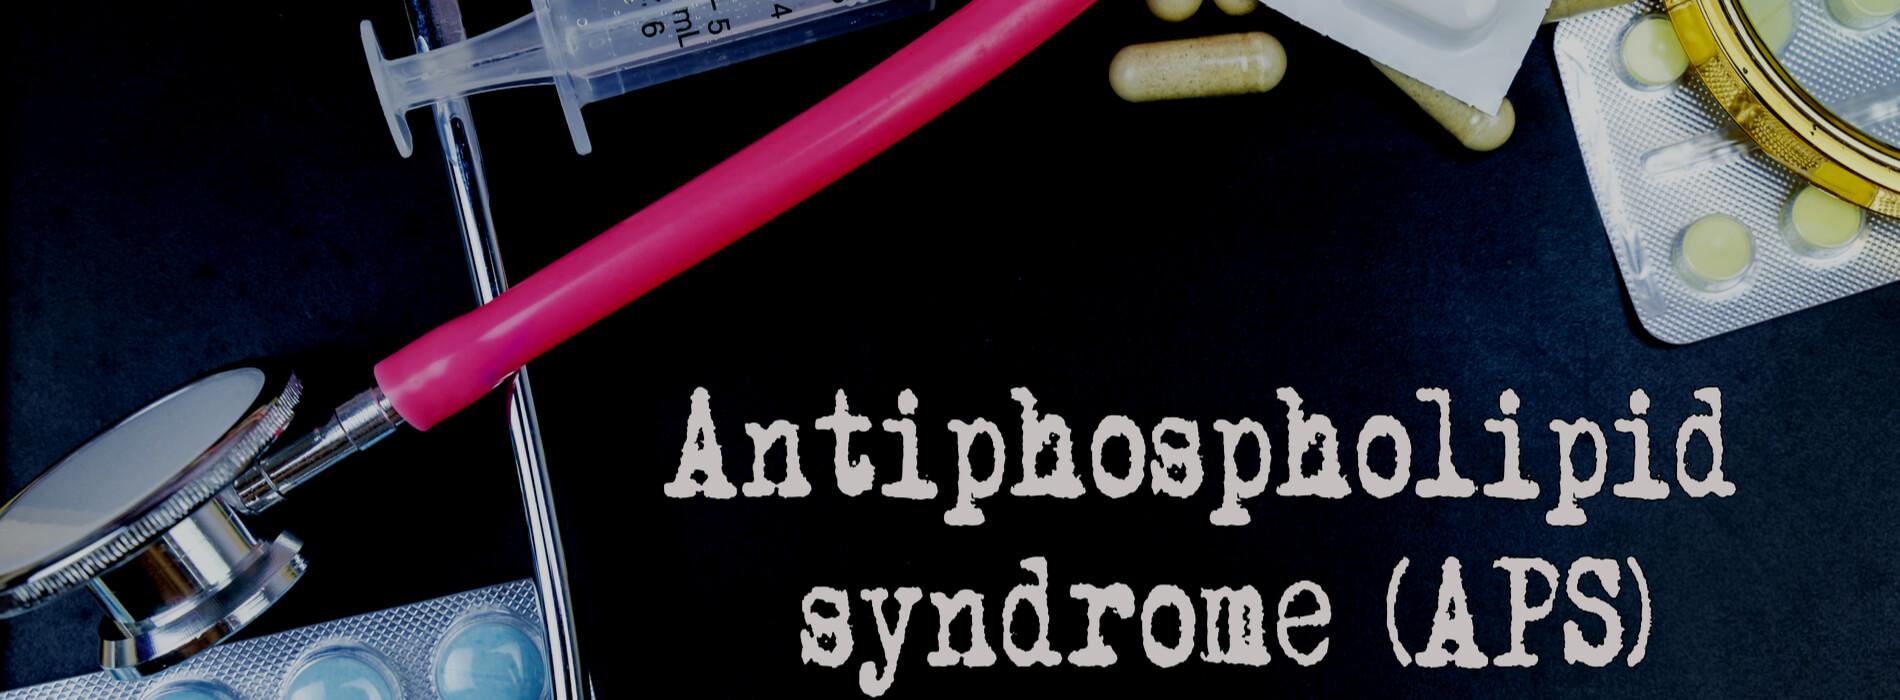 Zespół antyfosfolipidowy - jakie mogą być przyczyny i objawy?